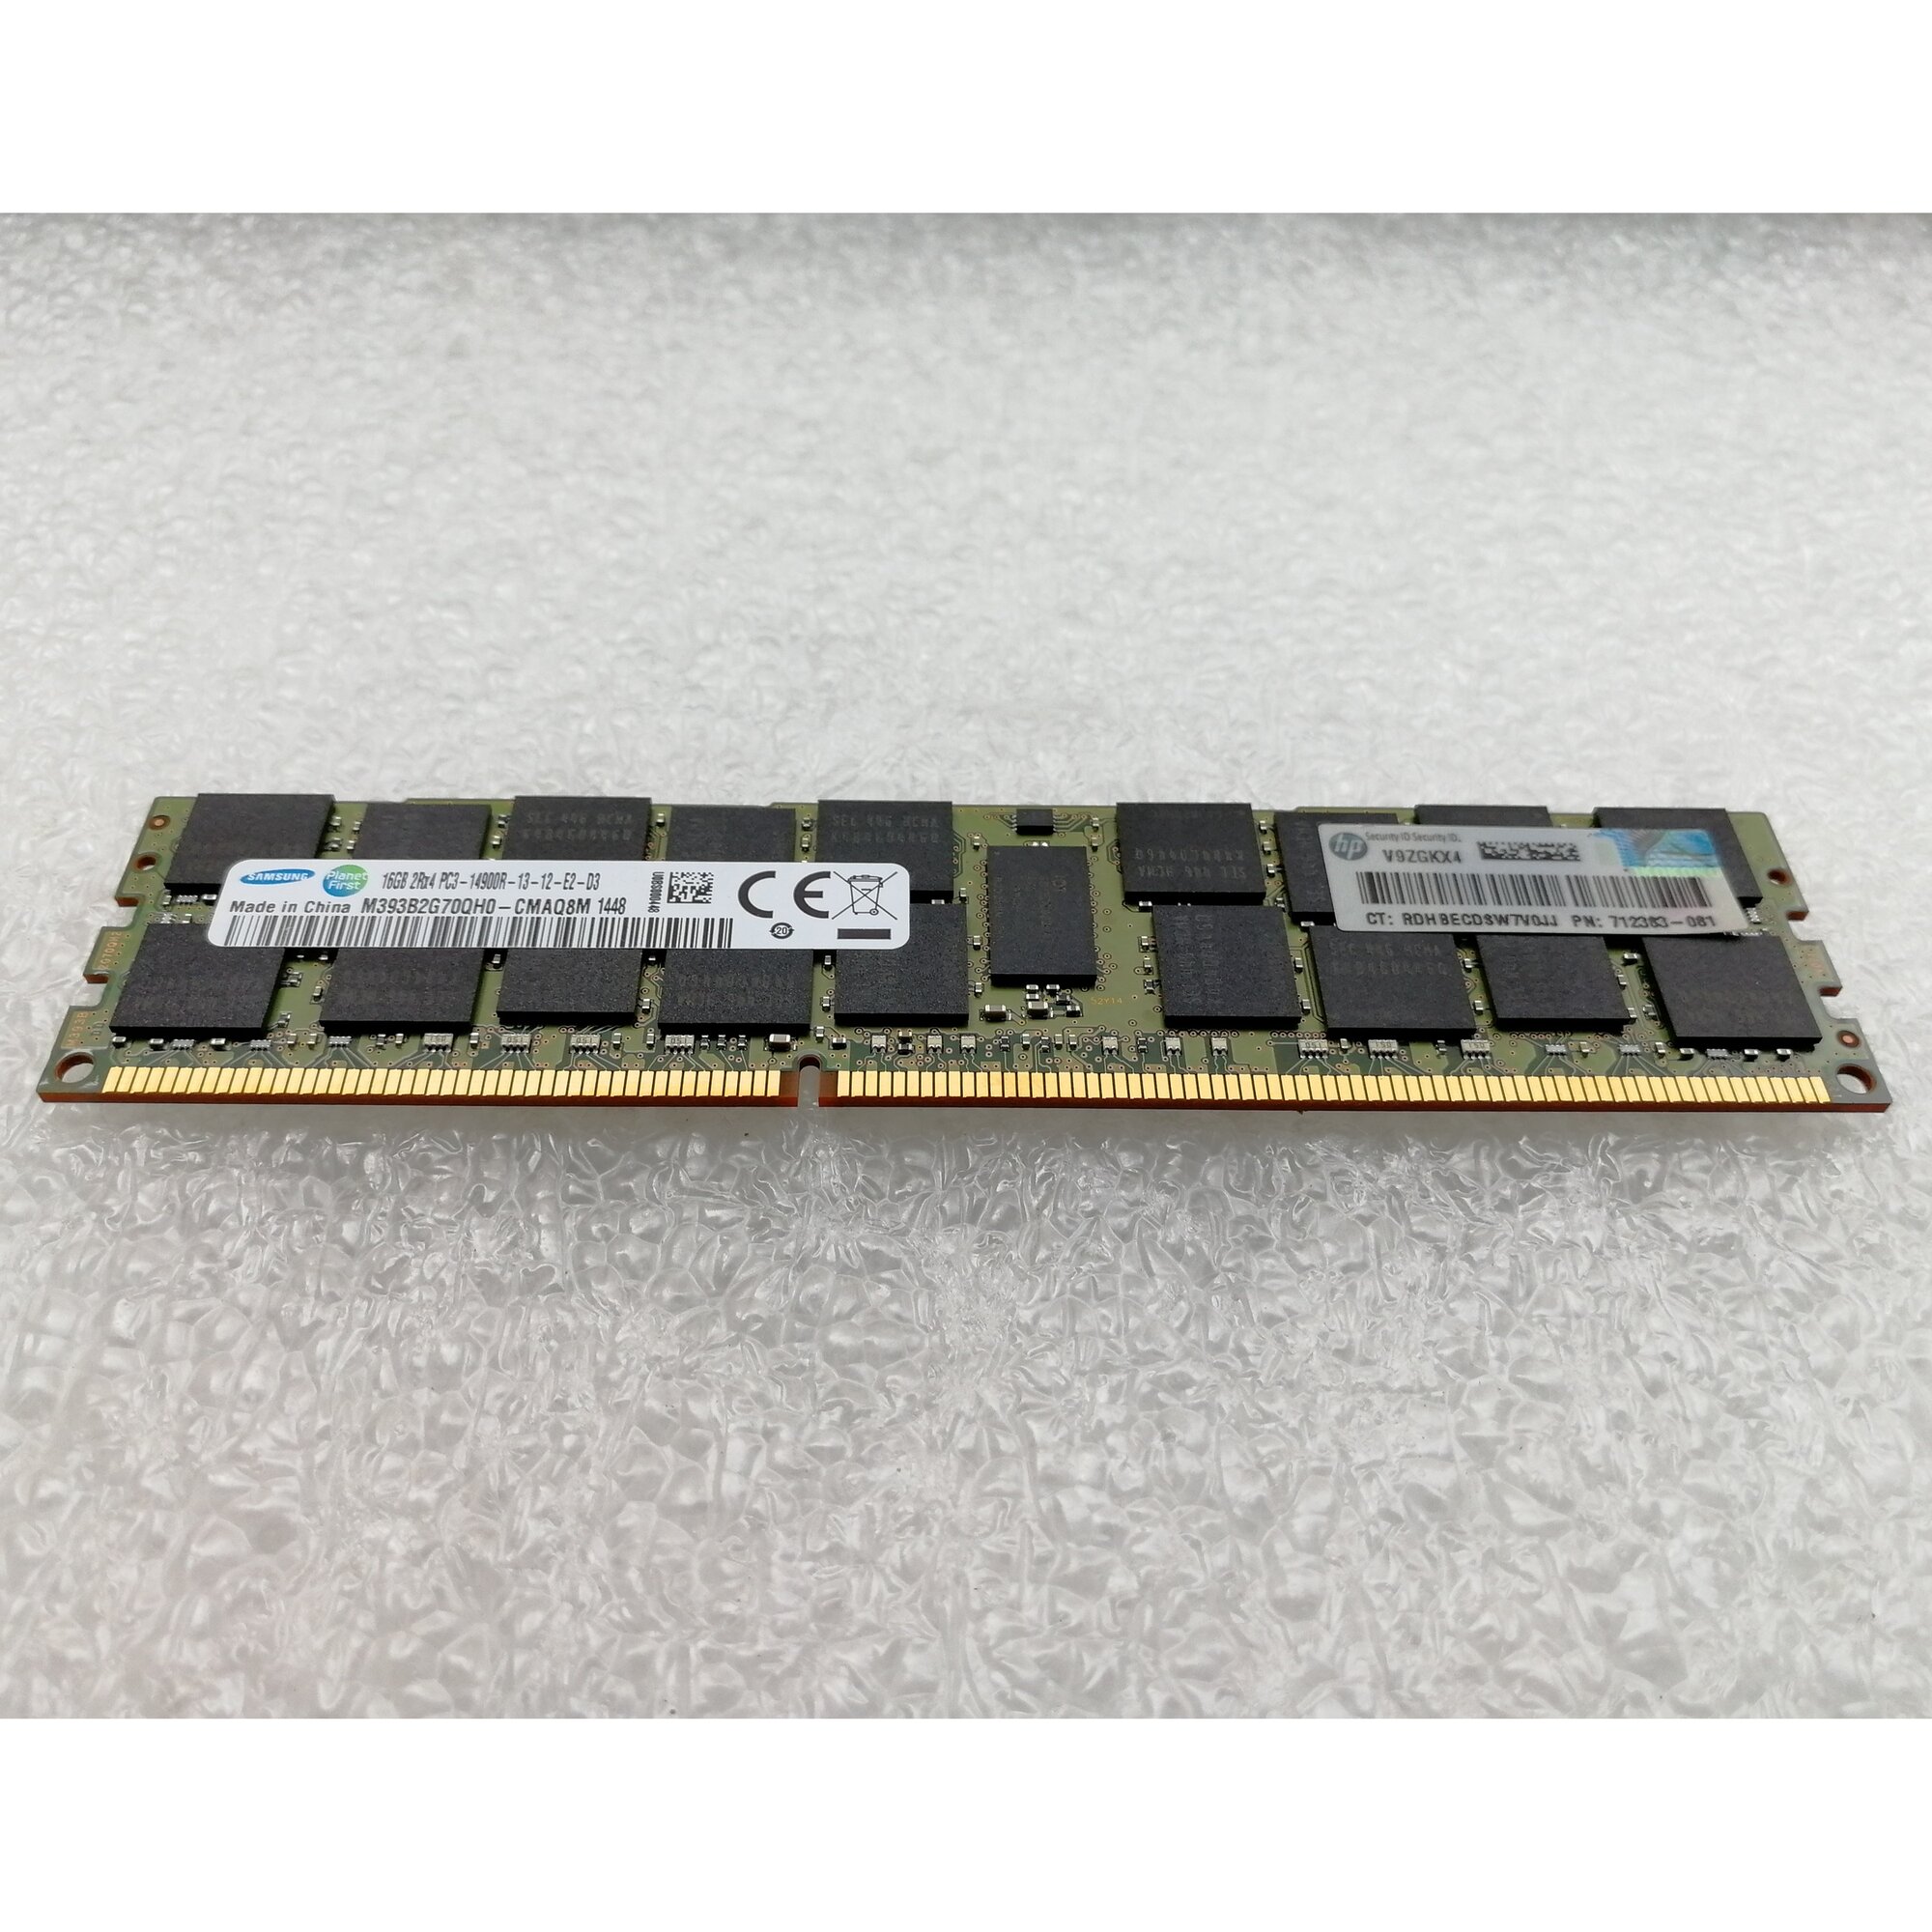 Оперативная память HP 708641-B21 16G 1866MHz DDR3 RDIMM серверная